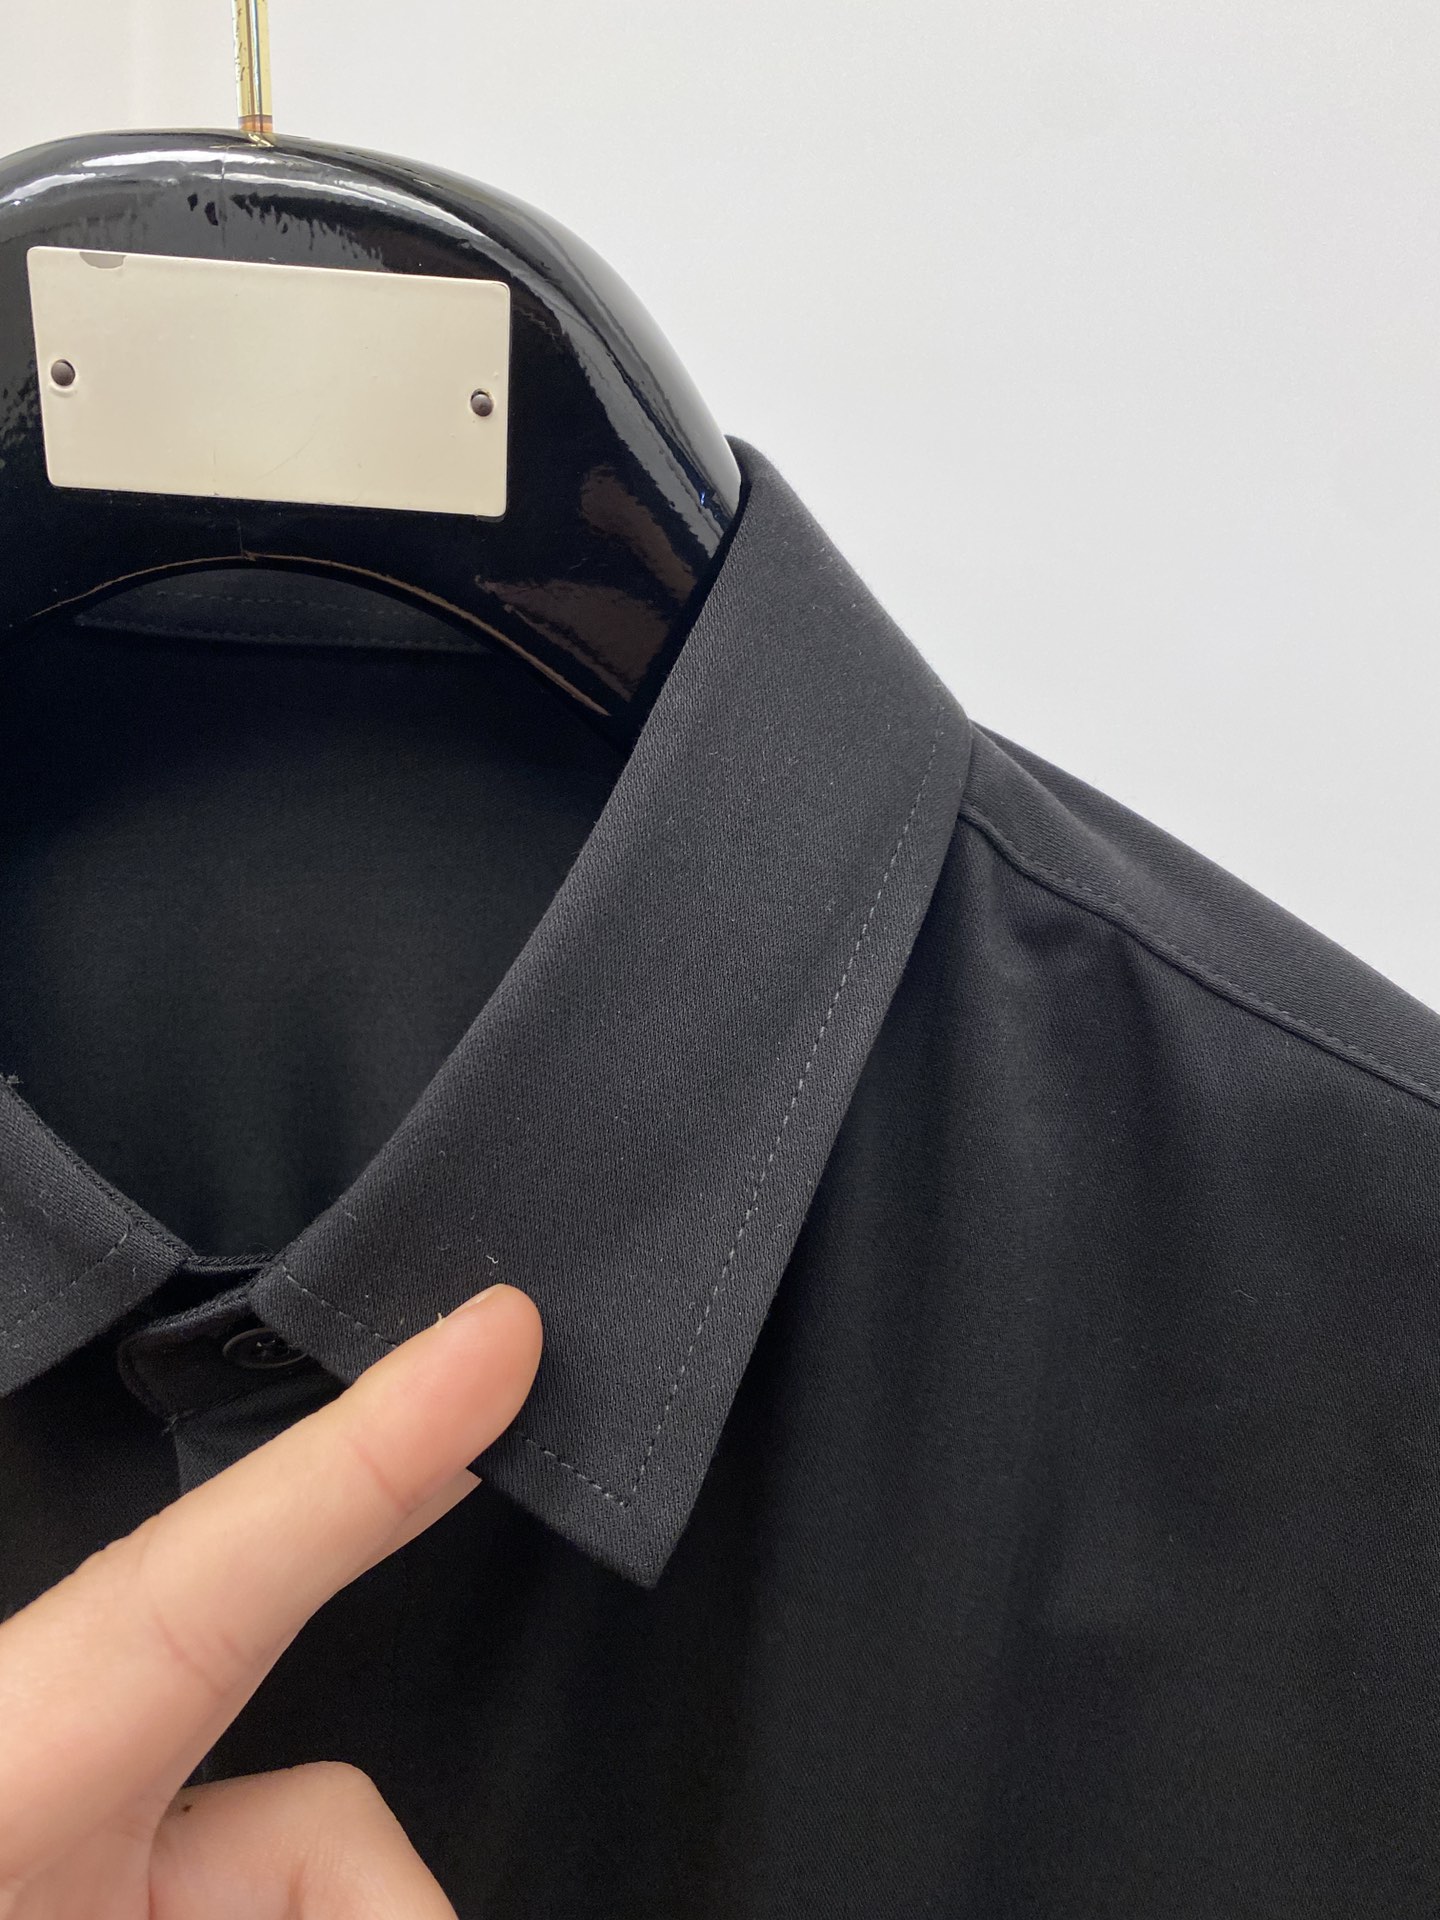 Berluti伯鲁蒂2024新款衬衫打造时装艺术感立体剪裁修身版型上身效果很帅气微彰显品位整体细节可以对